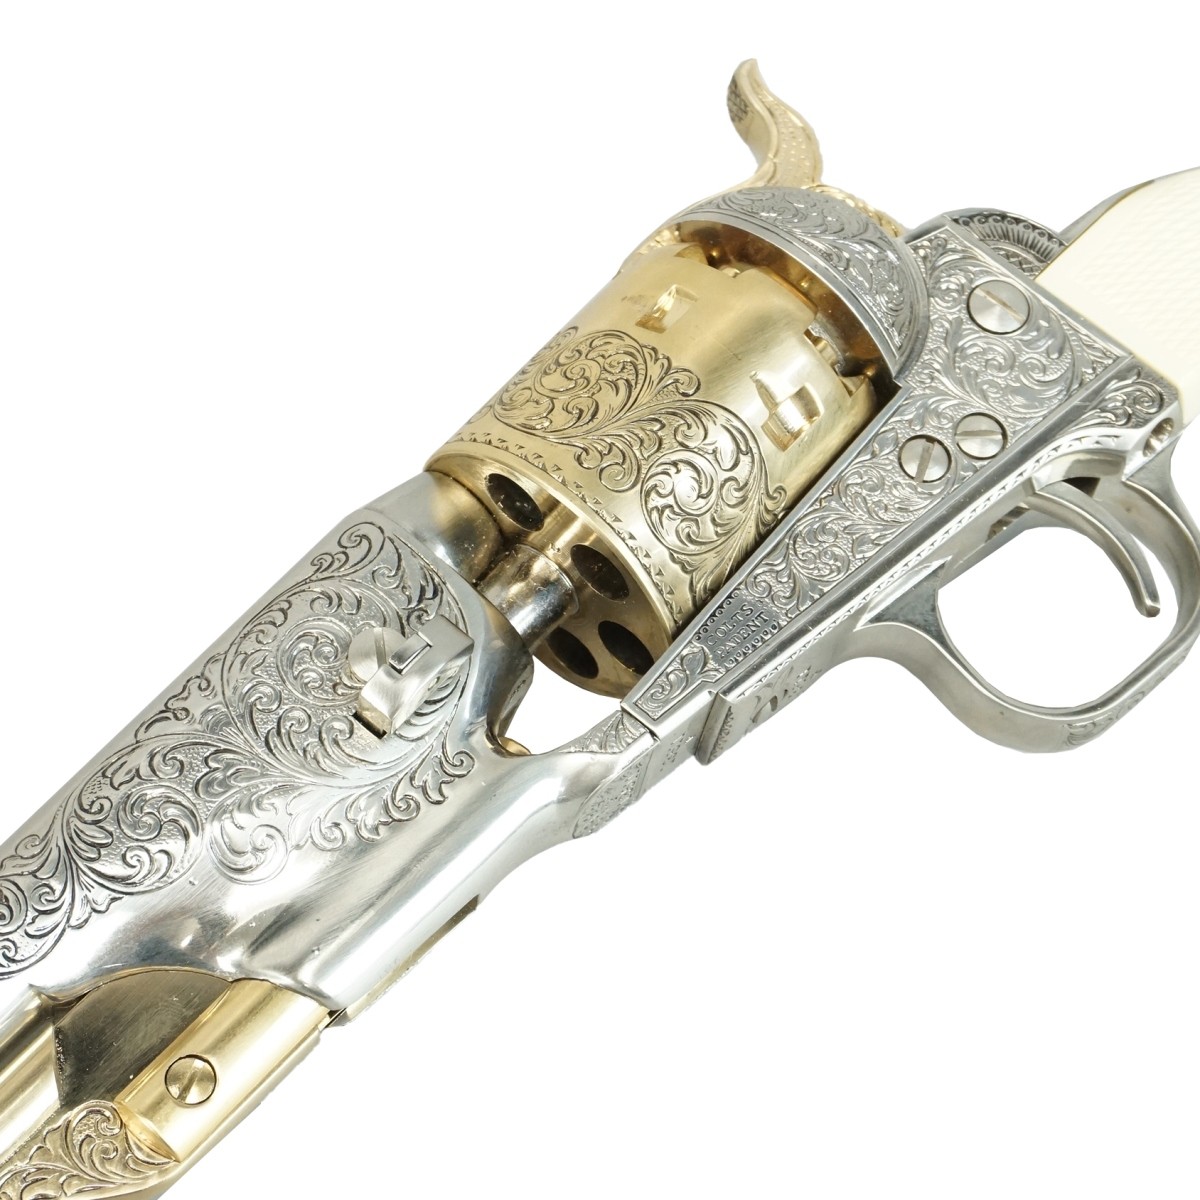 Replica General Custer's .36 Revolver